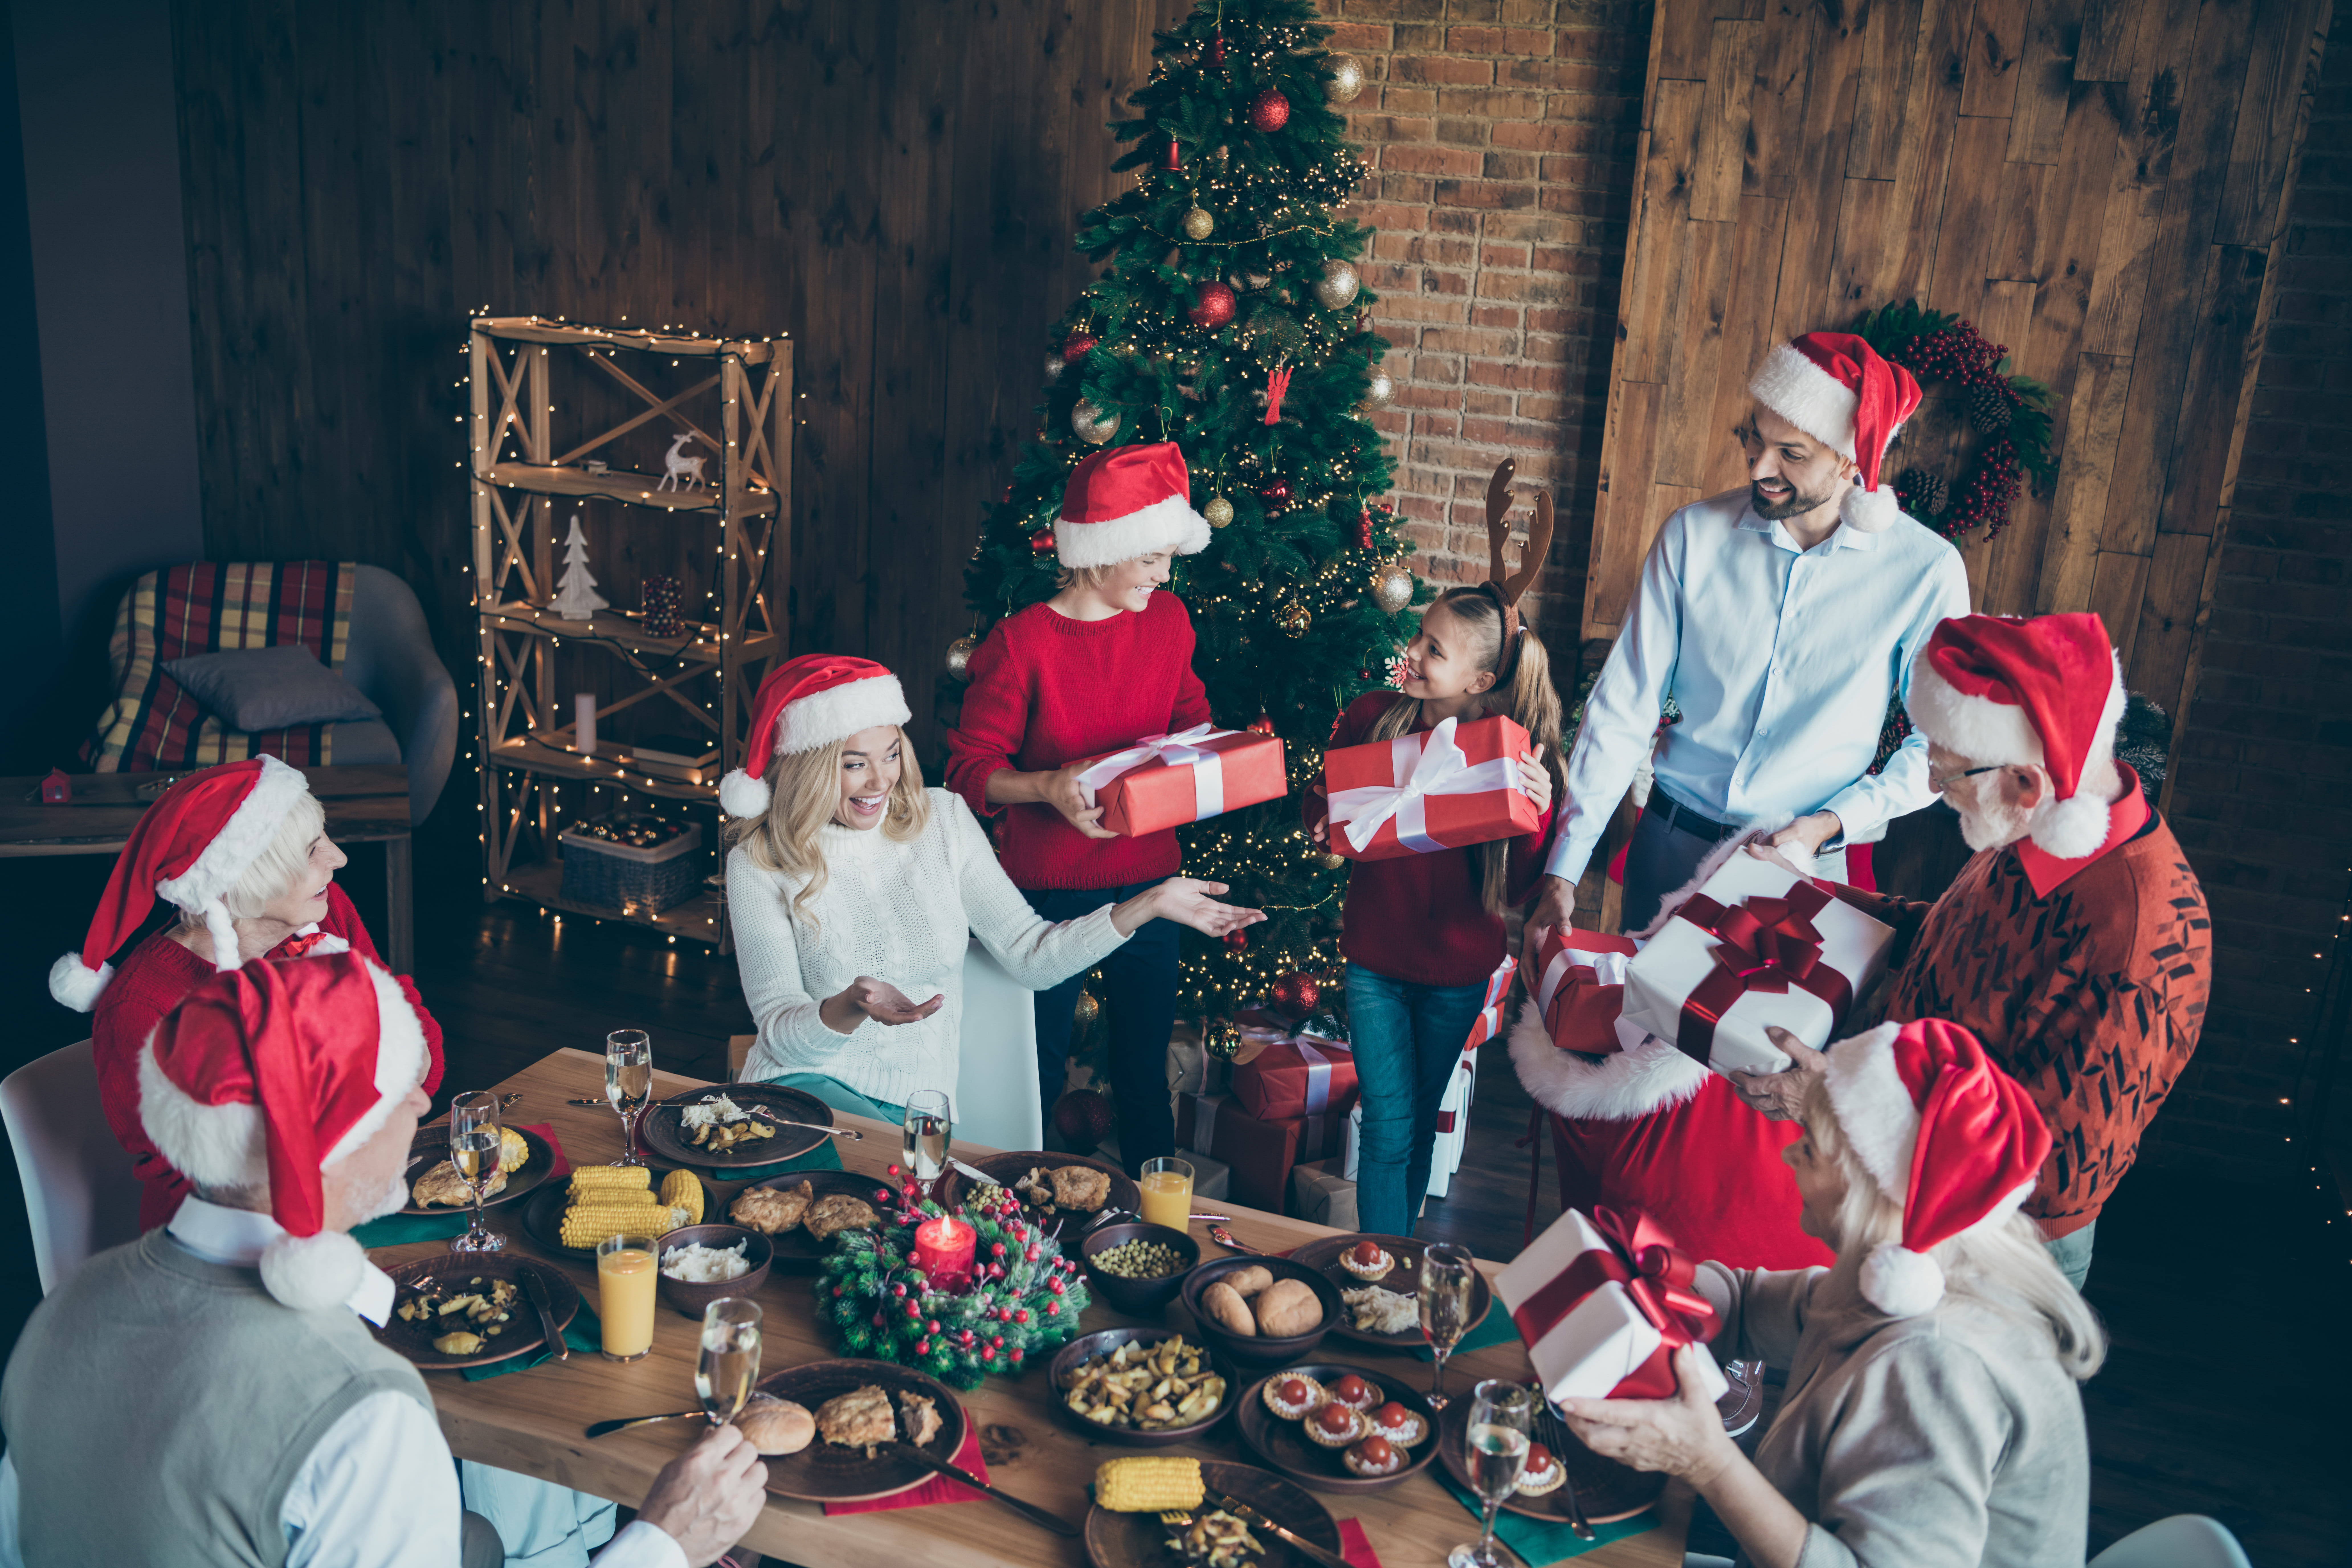 Les membres de la famille s'échangent des cadeaux à Noël | Source : Shutterstock